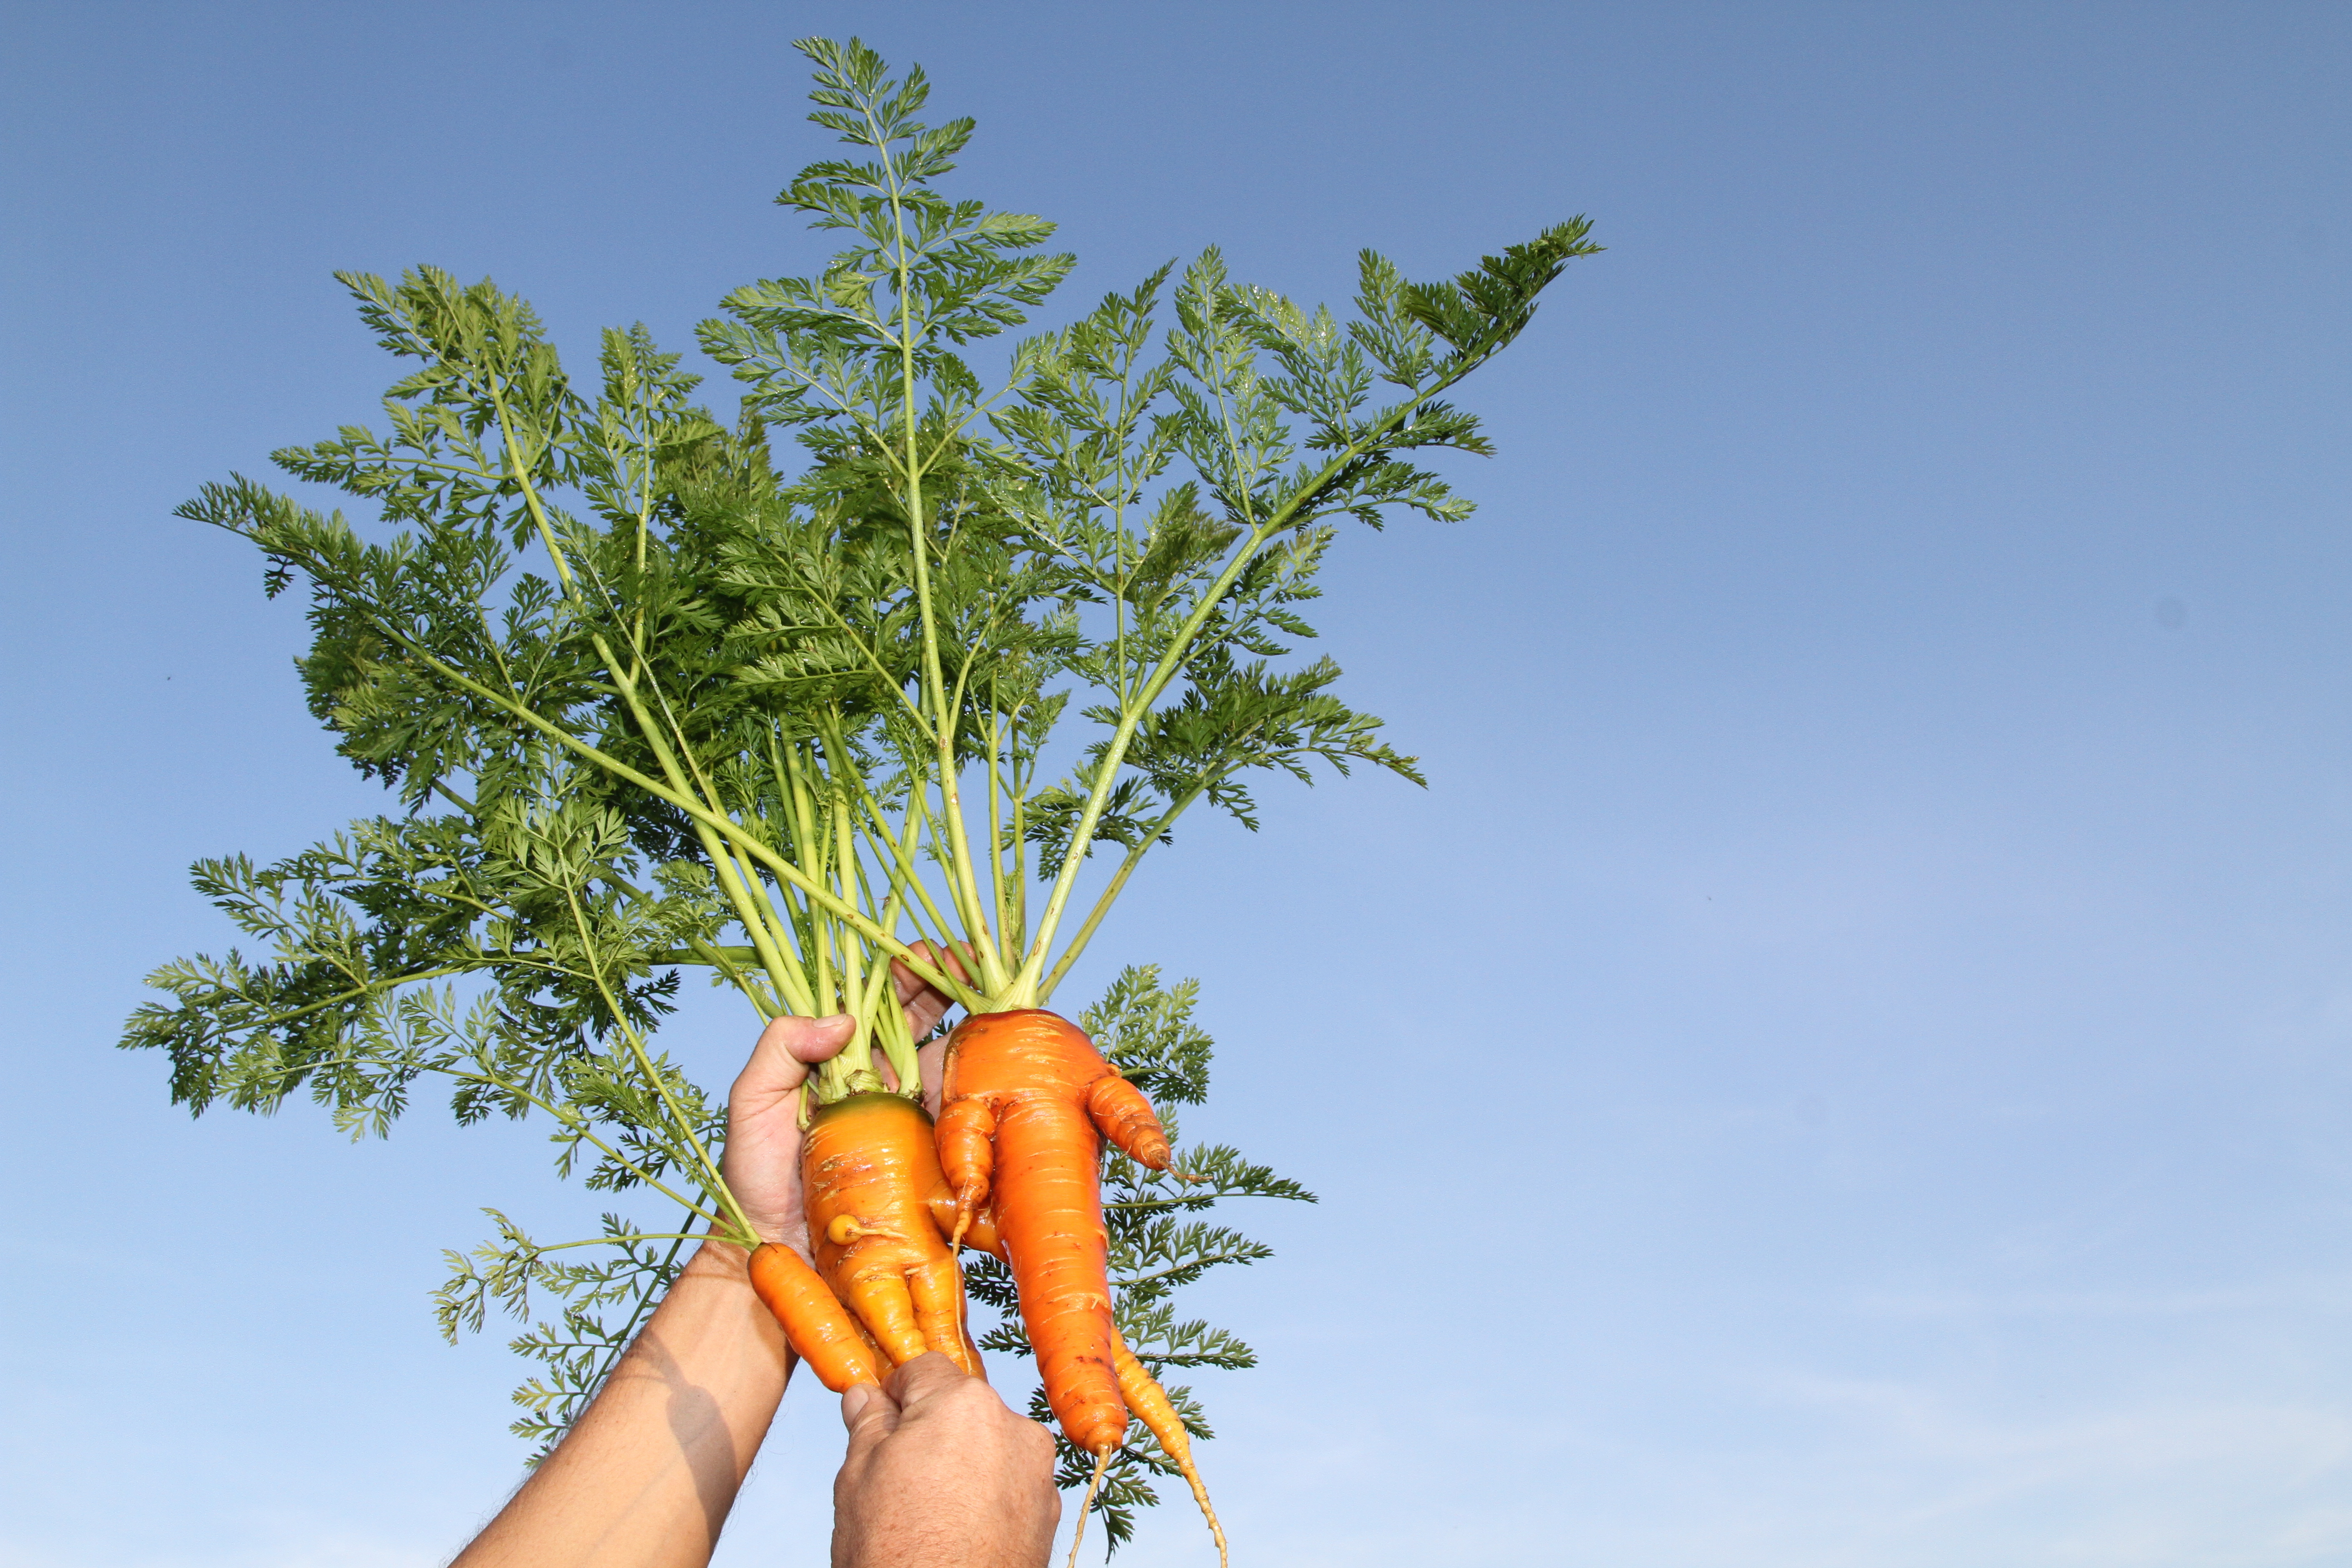 Food waste ugly fruit vegetables, misshapen carrots